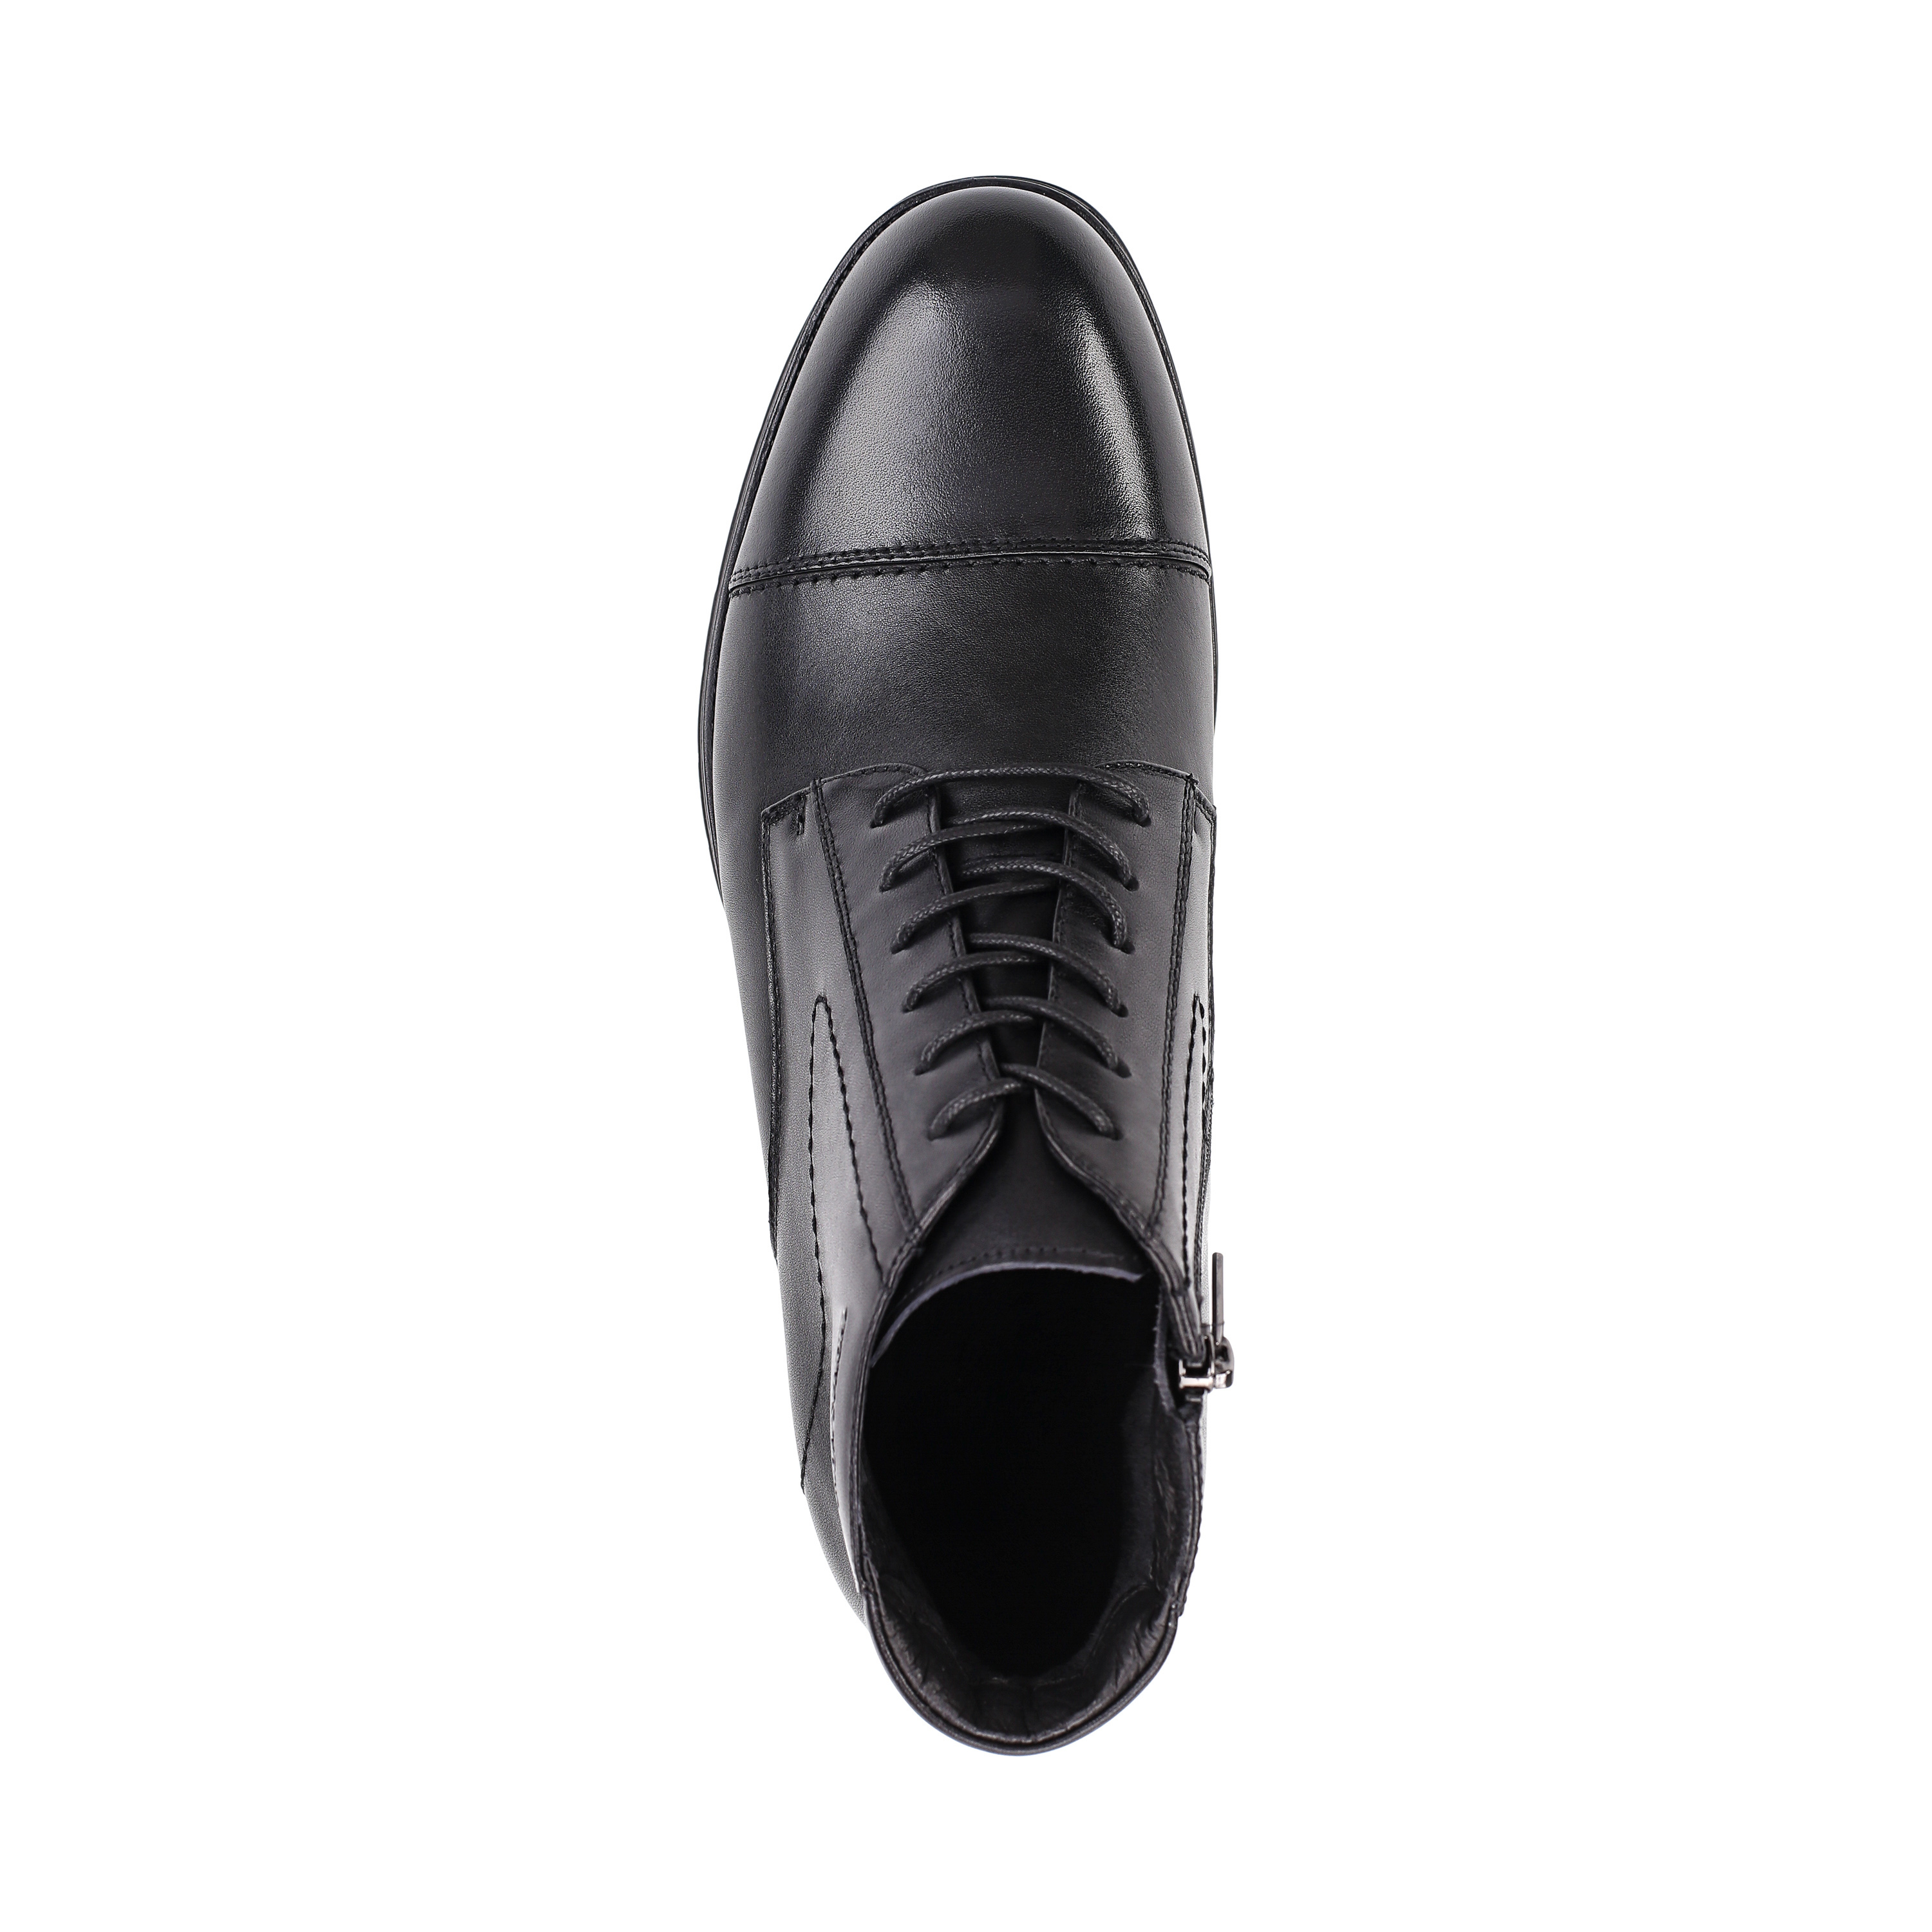 Ботинки Thomas Munz 104-140A-2102 104-140A-2102, цвет черный, размер 45 дерби - фото 5